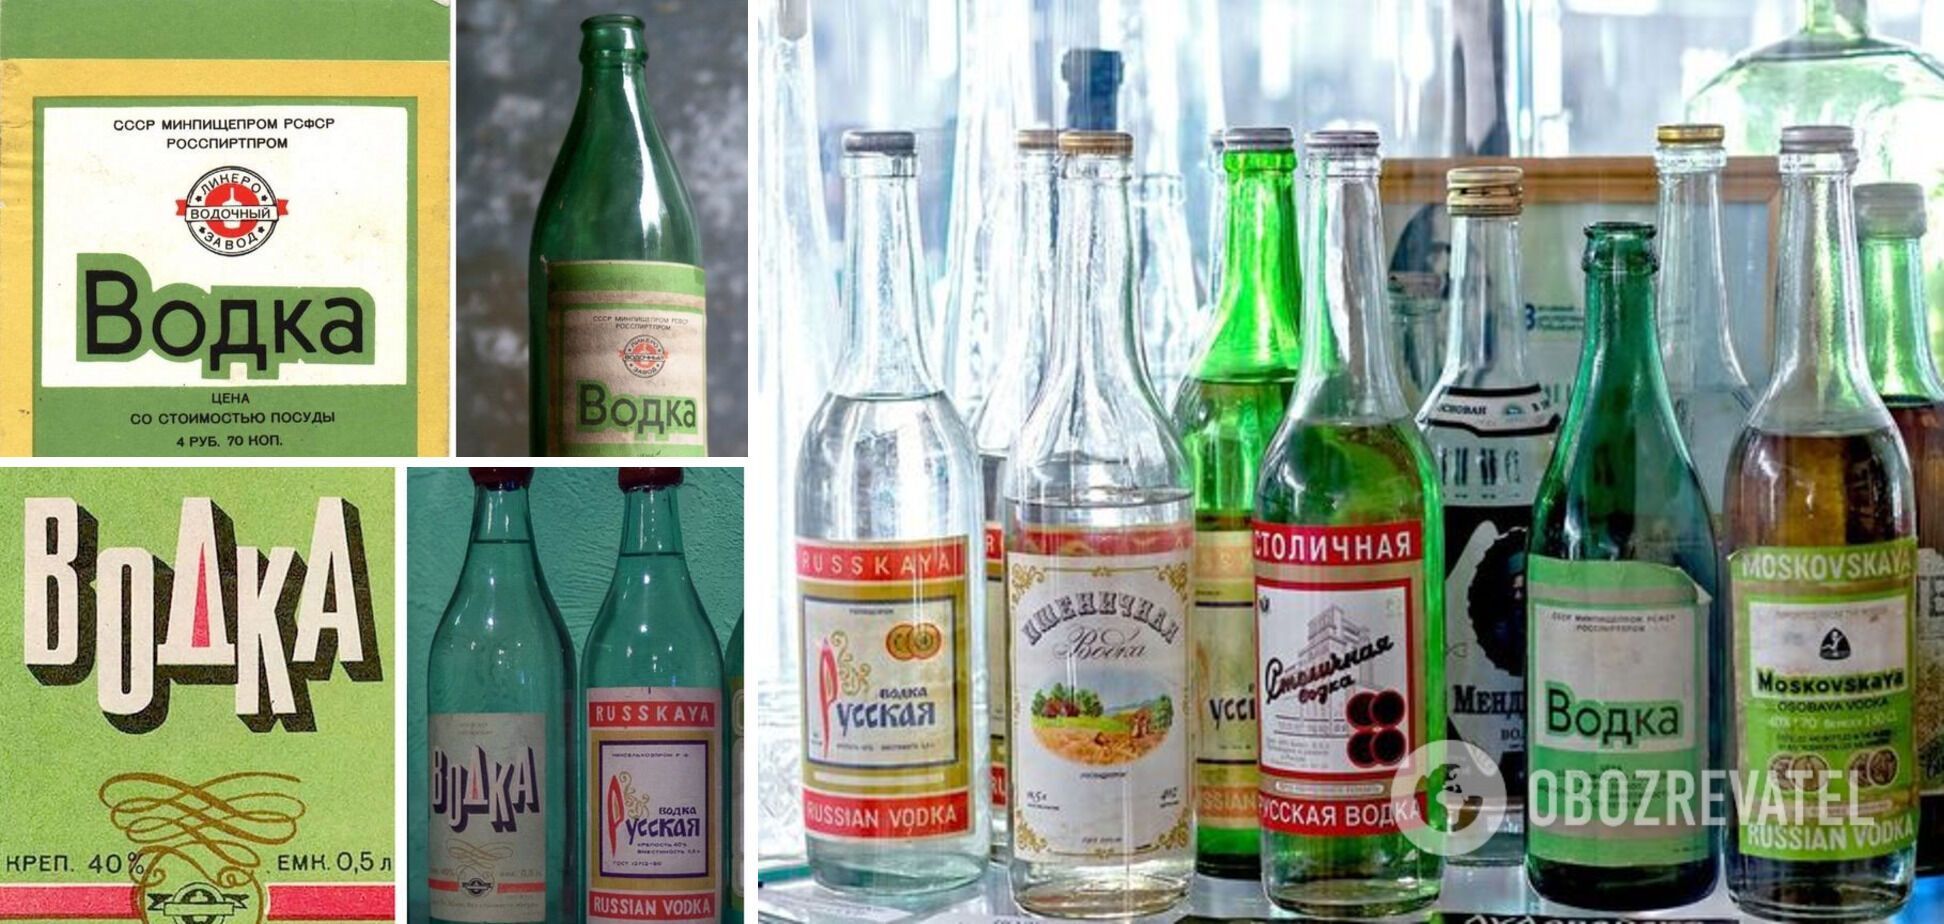 Больше всего бутылок и этикеток дошло до нас именно с советских времен. Но с украинской горилкой у них крайне мало общего